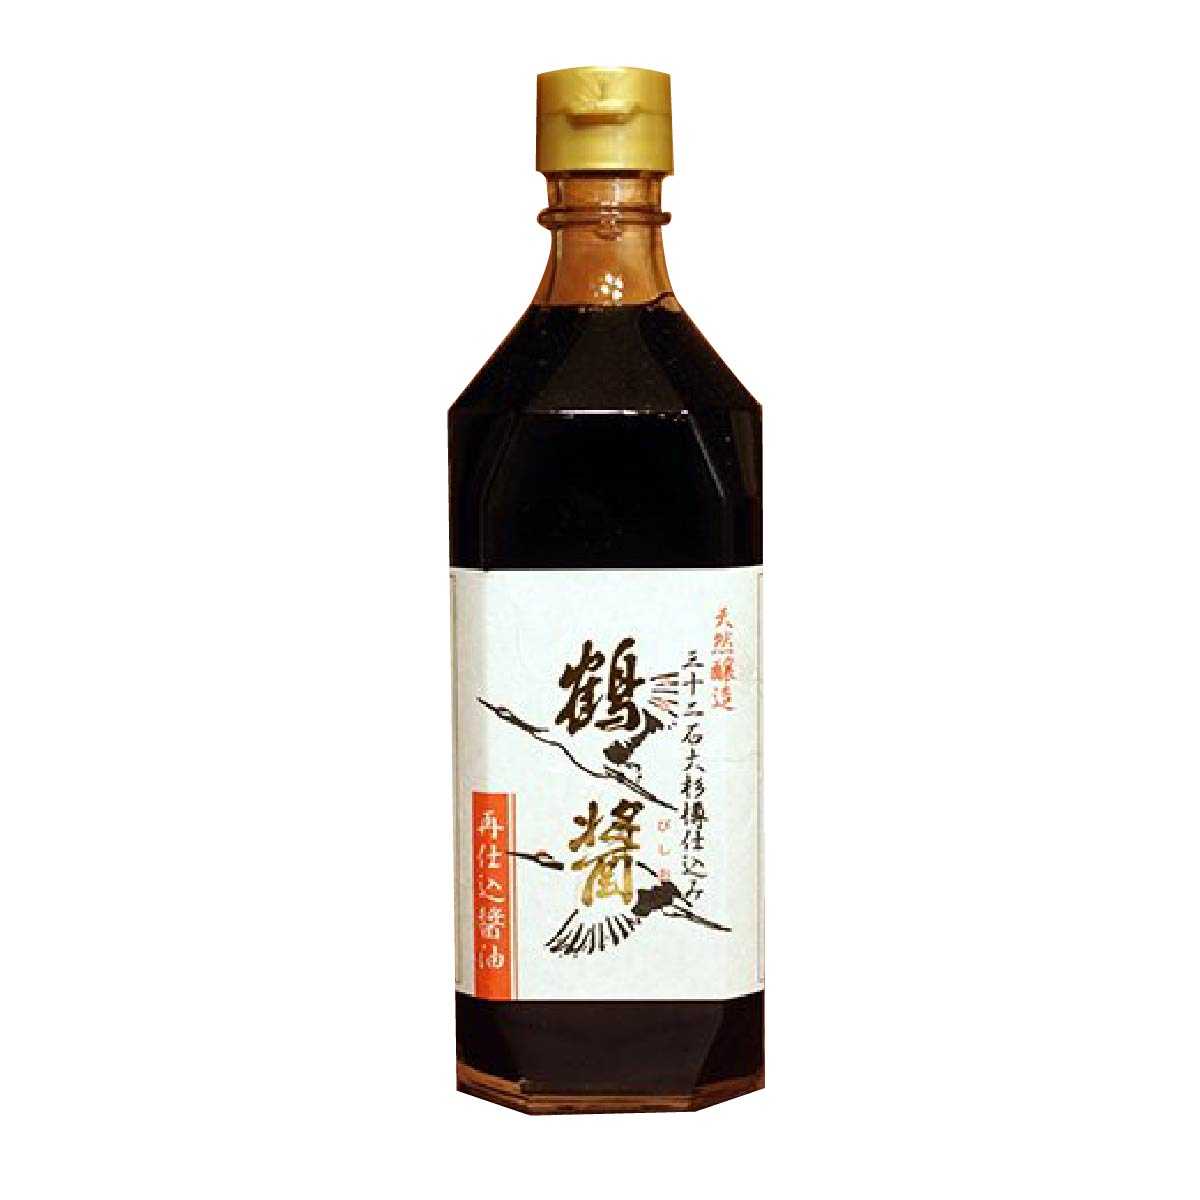 【小島商行】山六木桶手製鶴醬(500ml) 兩倍原料四年半釀製 台灣正式代理進口